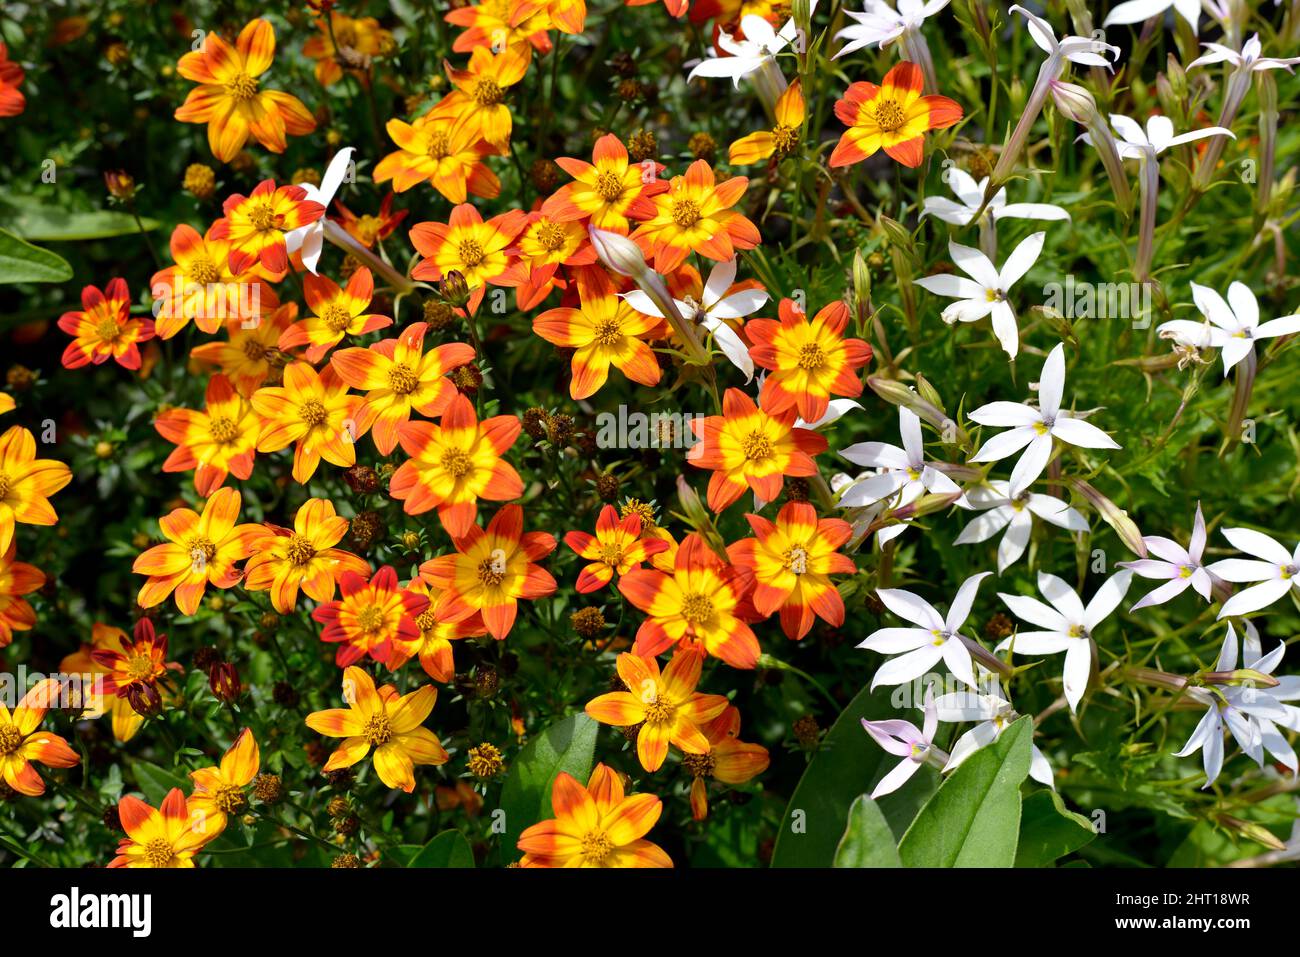 Sfondo di piccoli orange e fiori gialli del genere margherita in un giardino alla francese Foto Stock